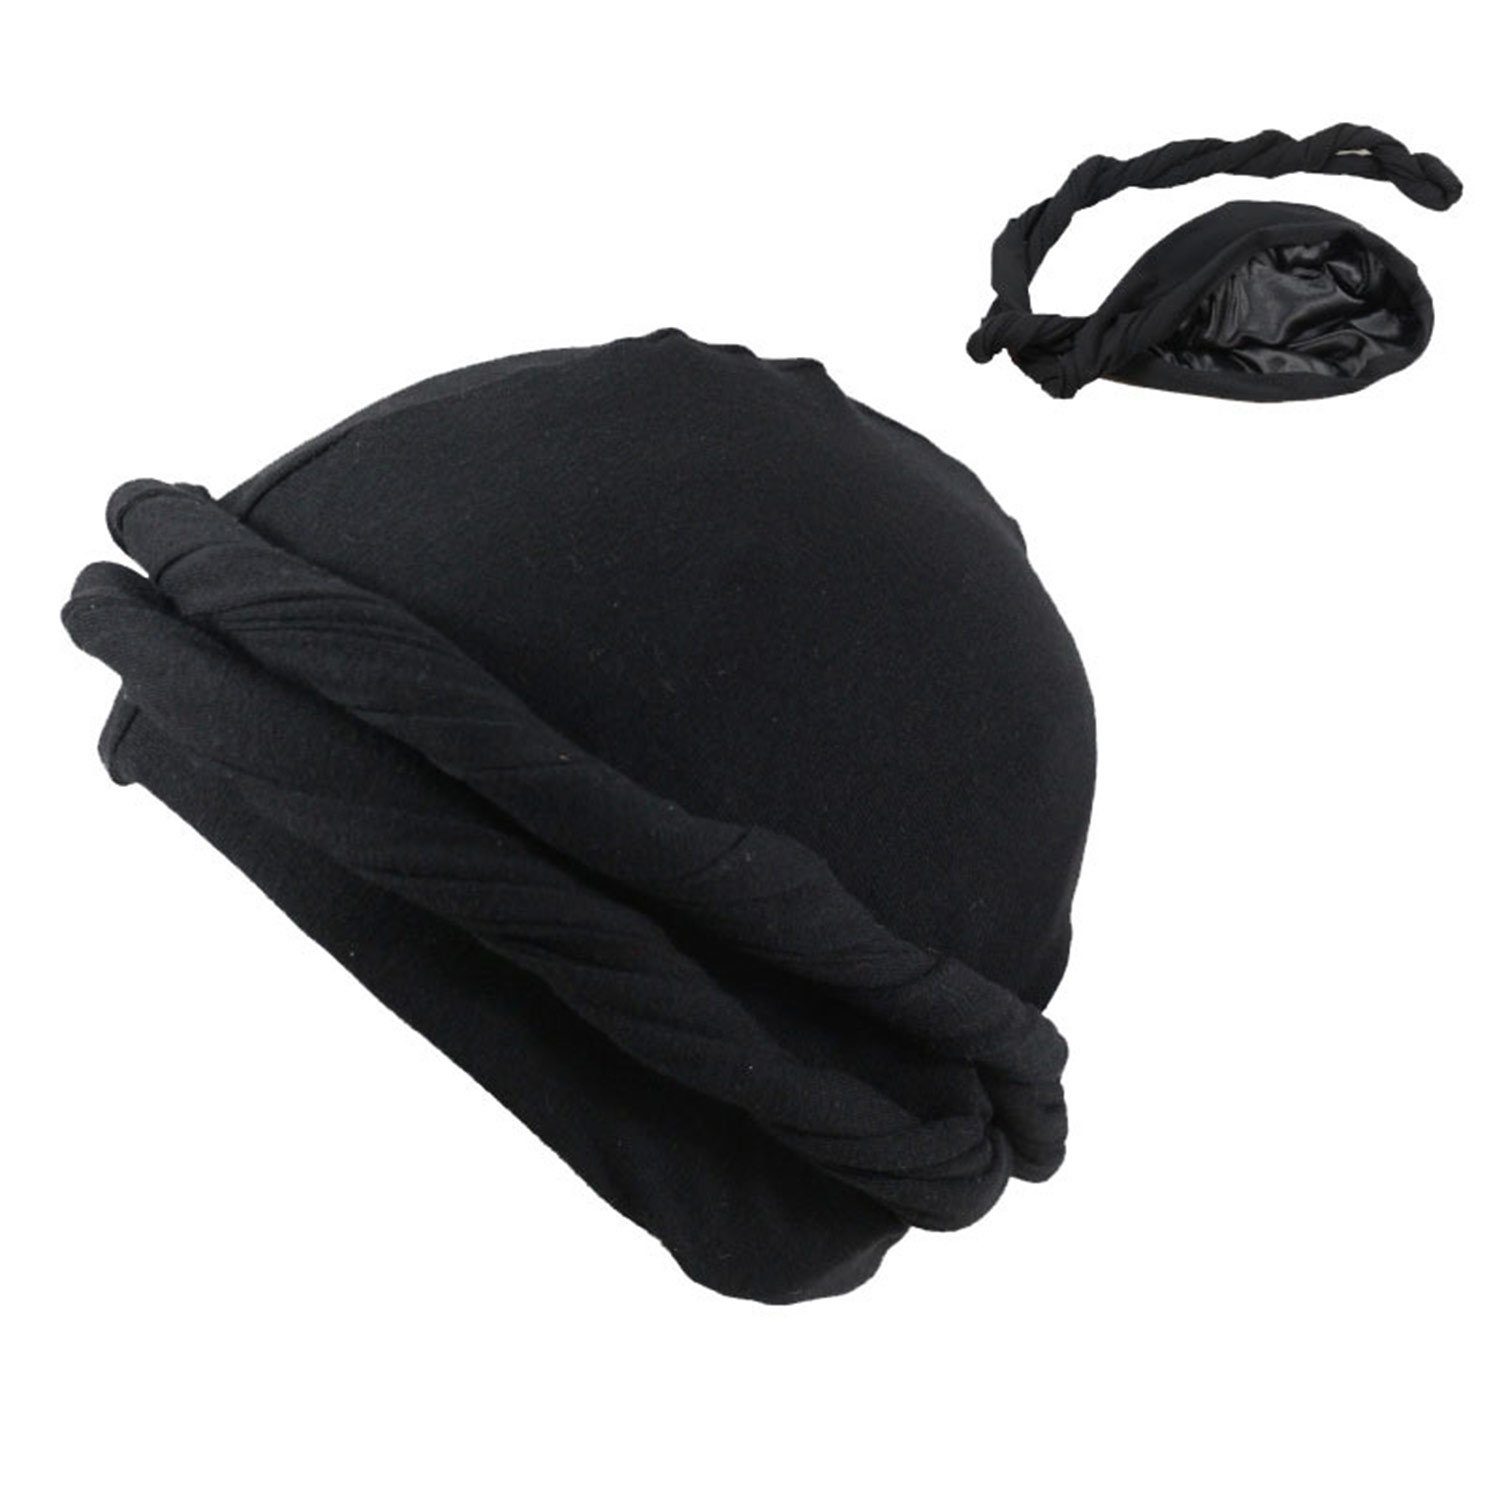 MAGICSHE Turbanmütze Kopfbedeckung, Turban Herren Schwarz Turban Hut, Ethnic Schlapphut